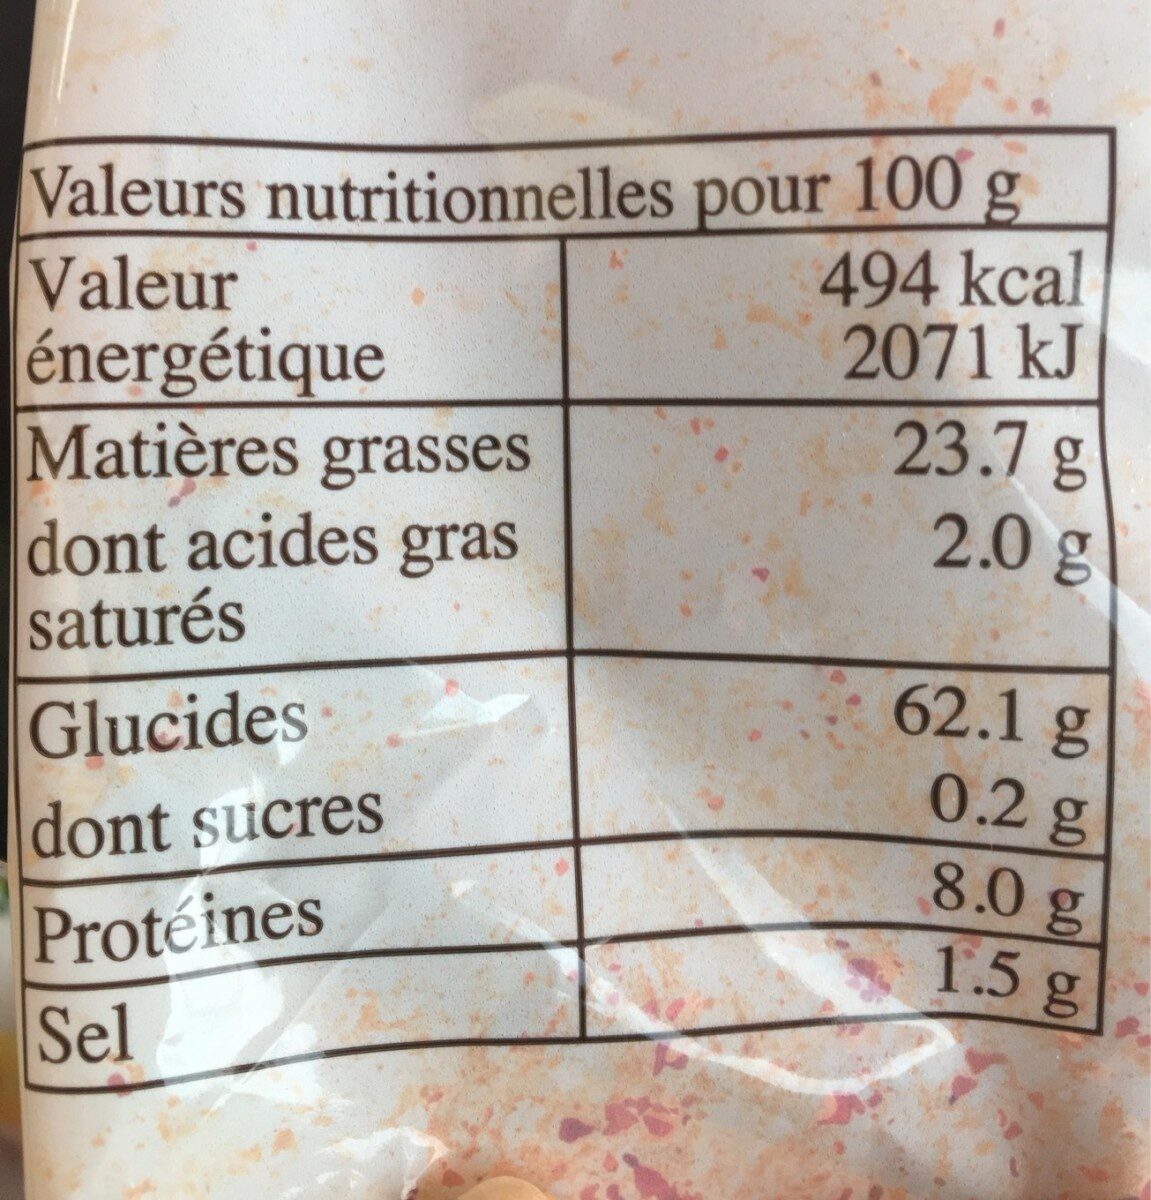 Les chips de l'aveyron - Nutrition facts - fr